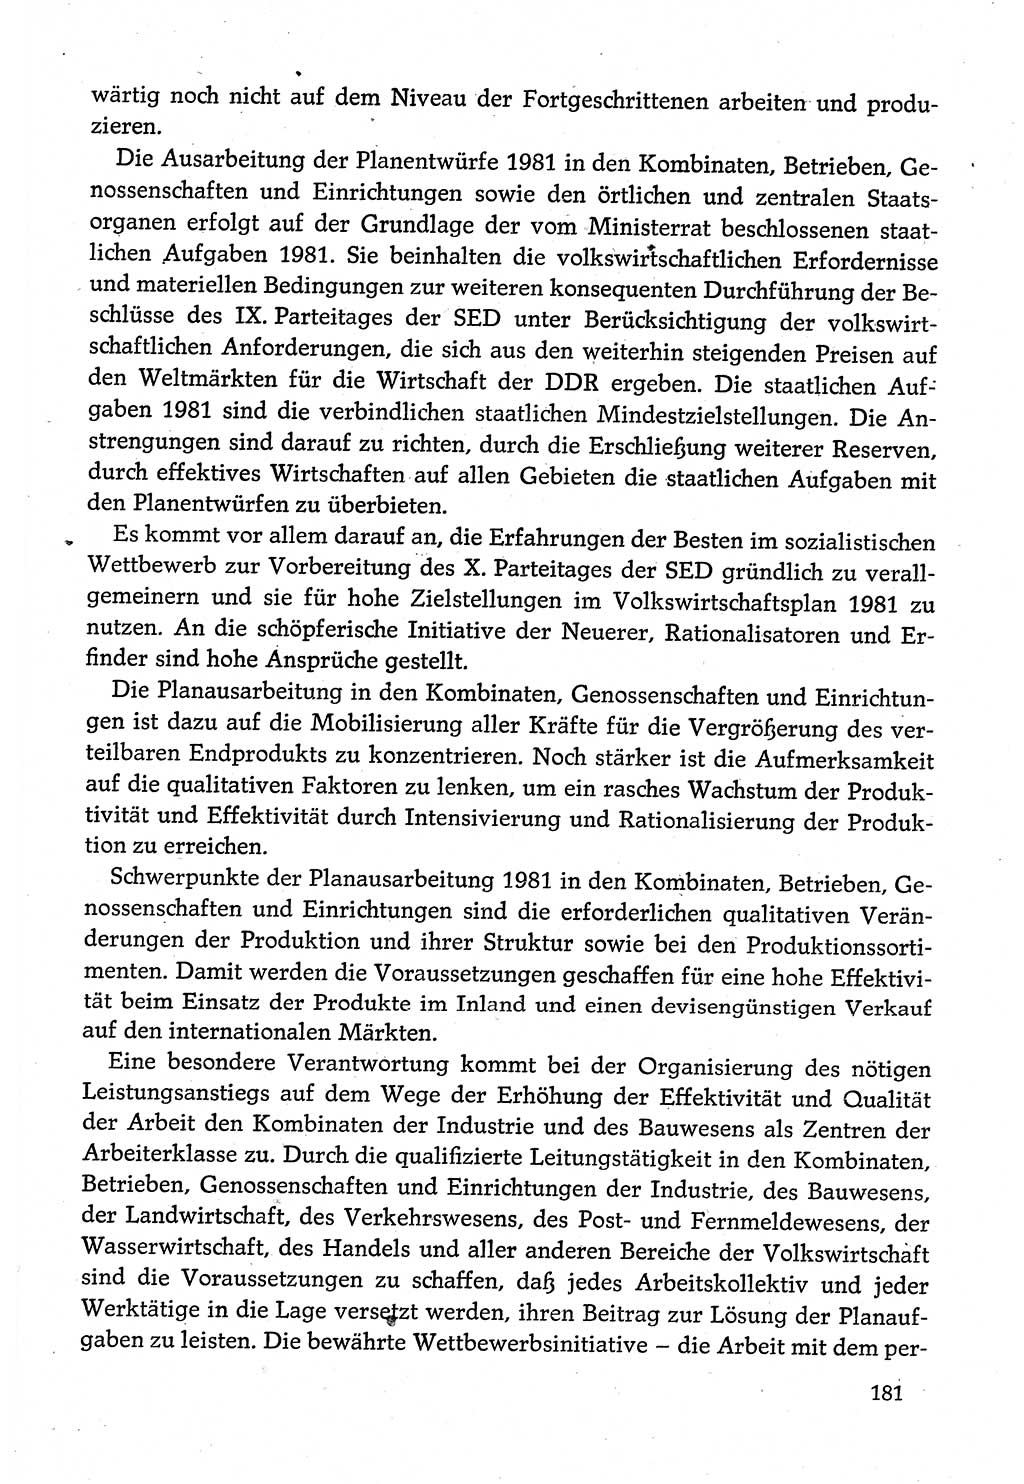 Dokumente der Sozialistischen Einheitspartei Deutschlands (SED) [Deutsche Demokratische Republik (DDR)] 1980-1981, Seite 181 (Dok. SED DDR 1980-1981, S. 181)